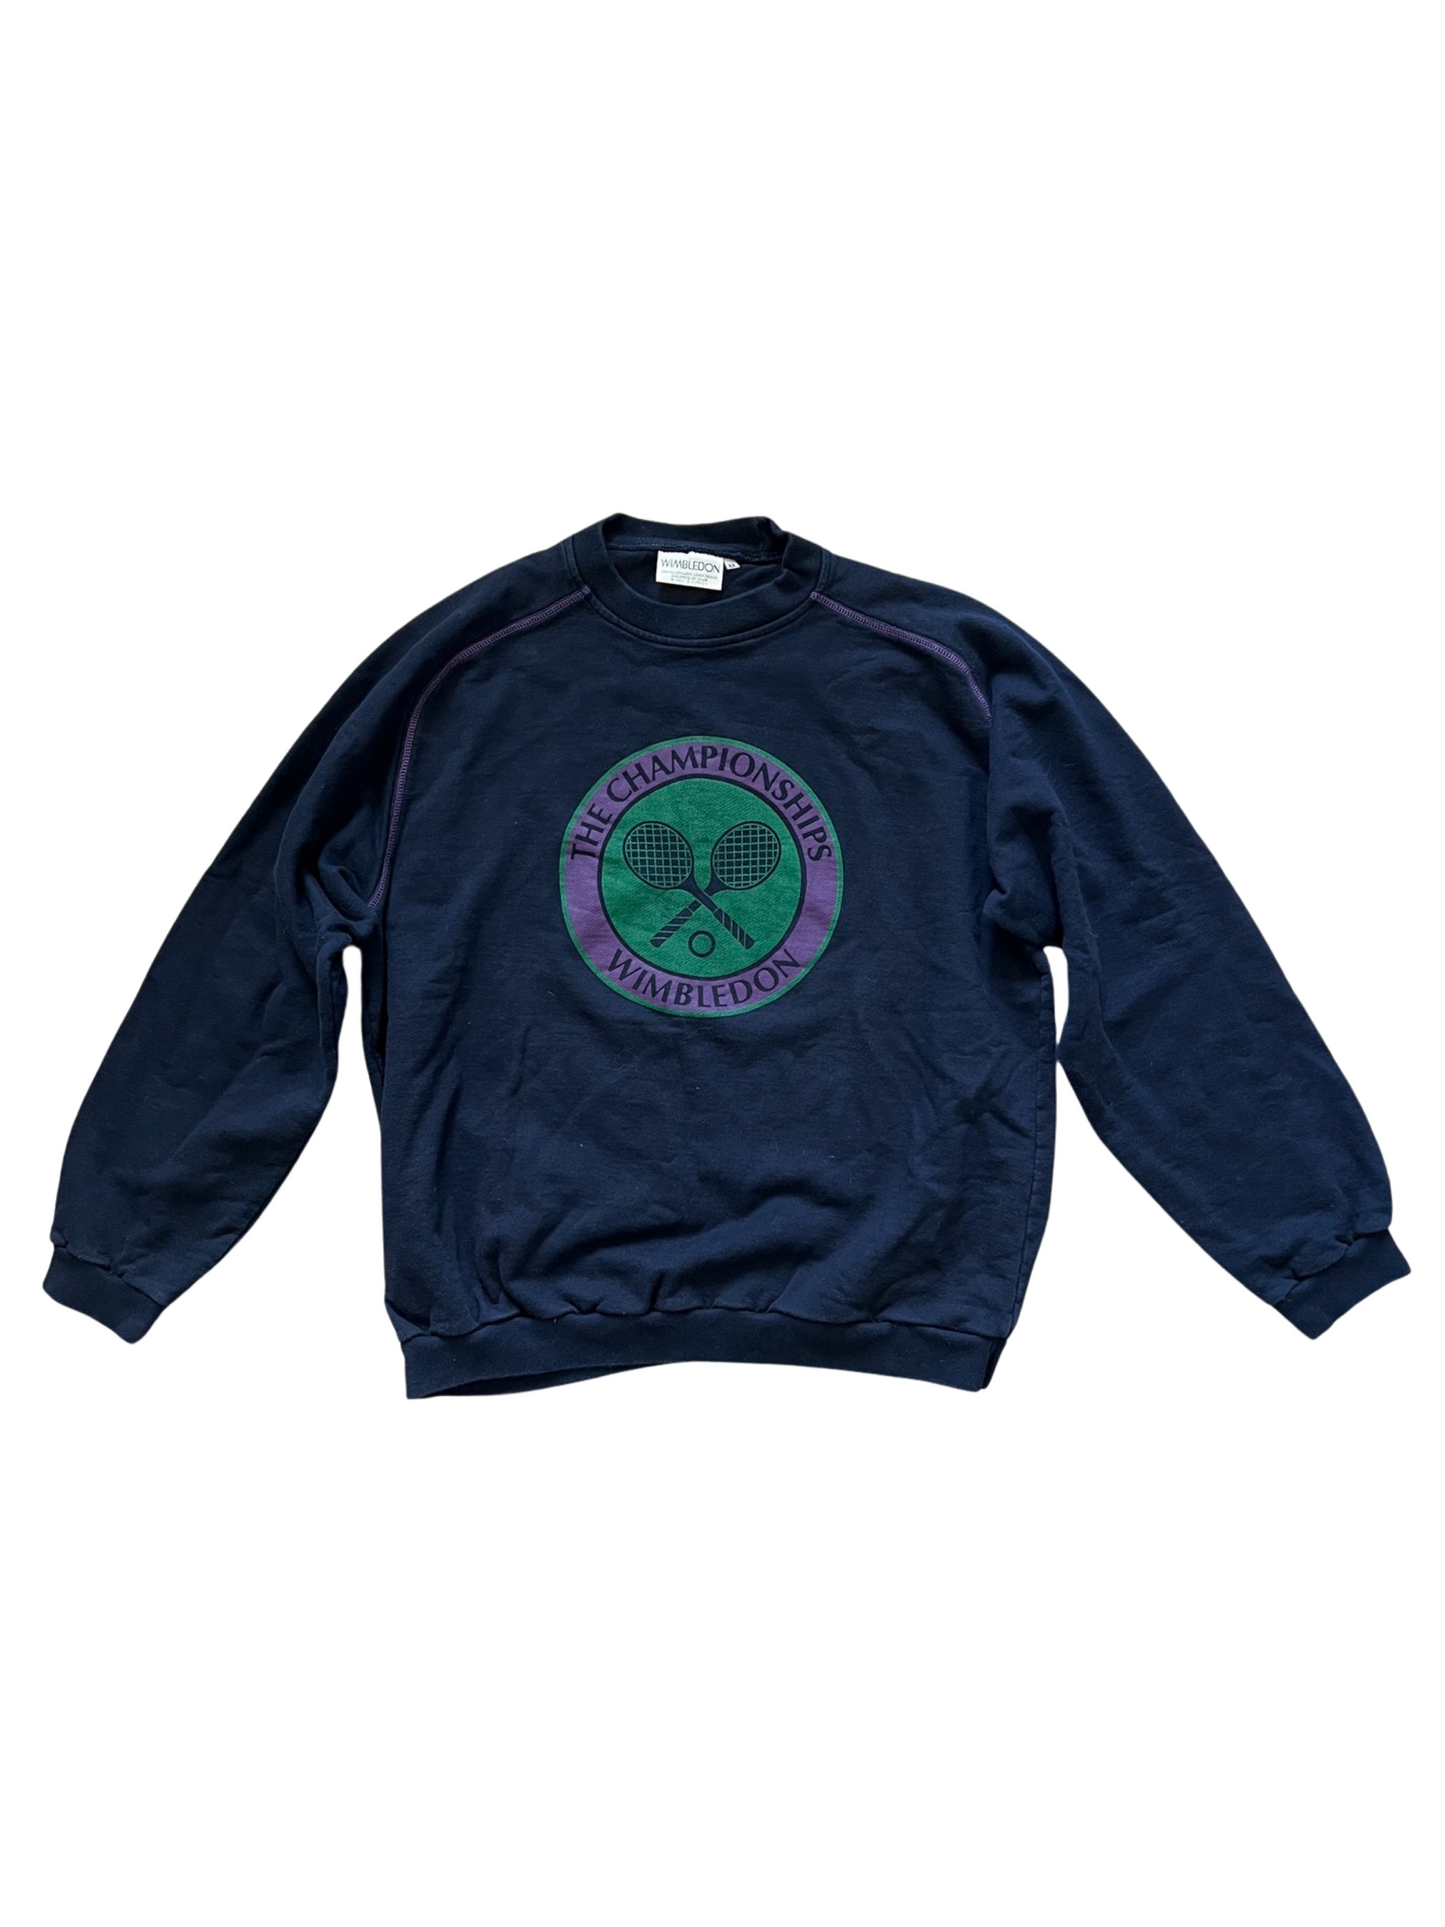 Vintage Wimbledon Crewneck Sweater (circa 2000s)